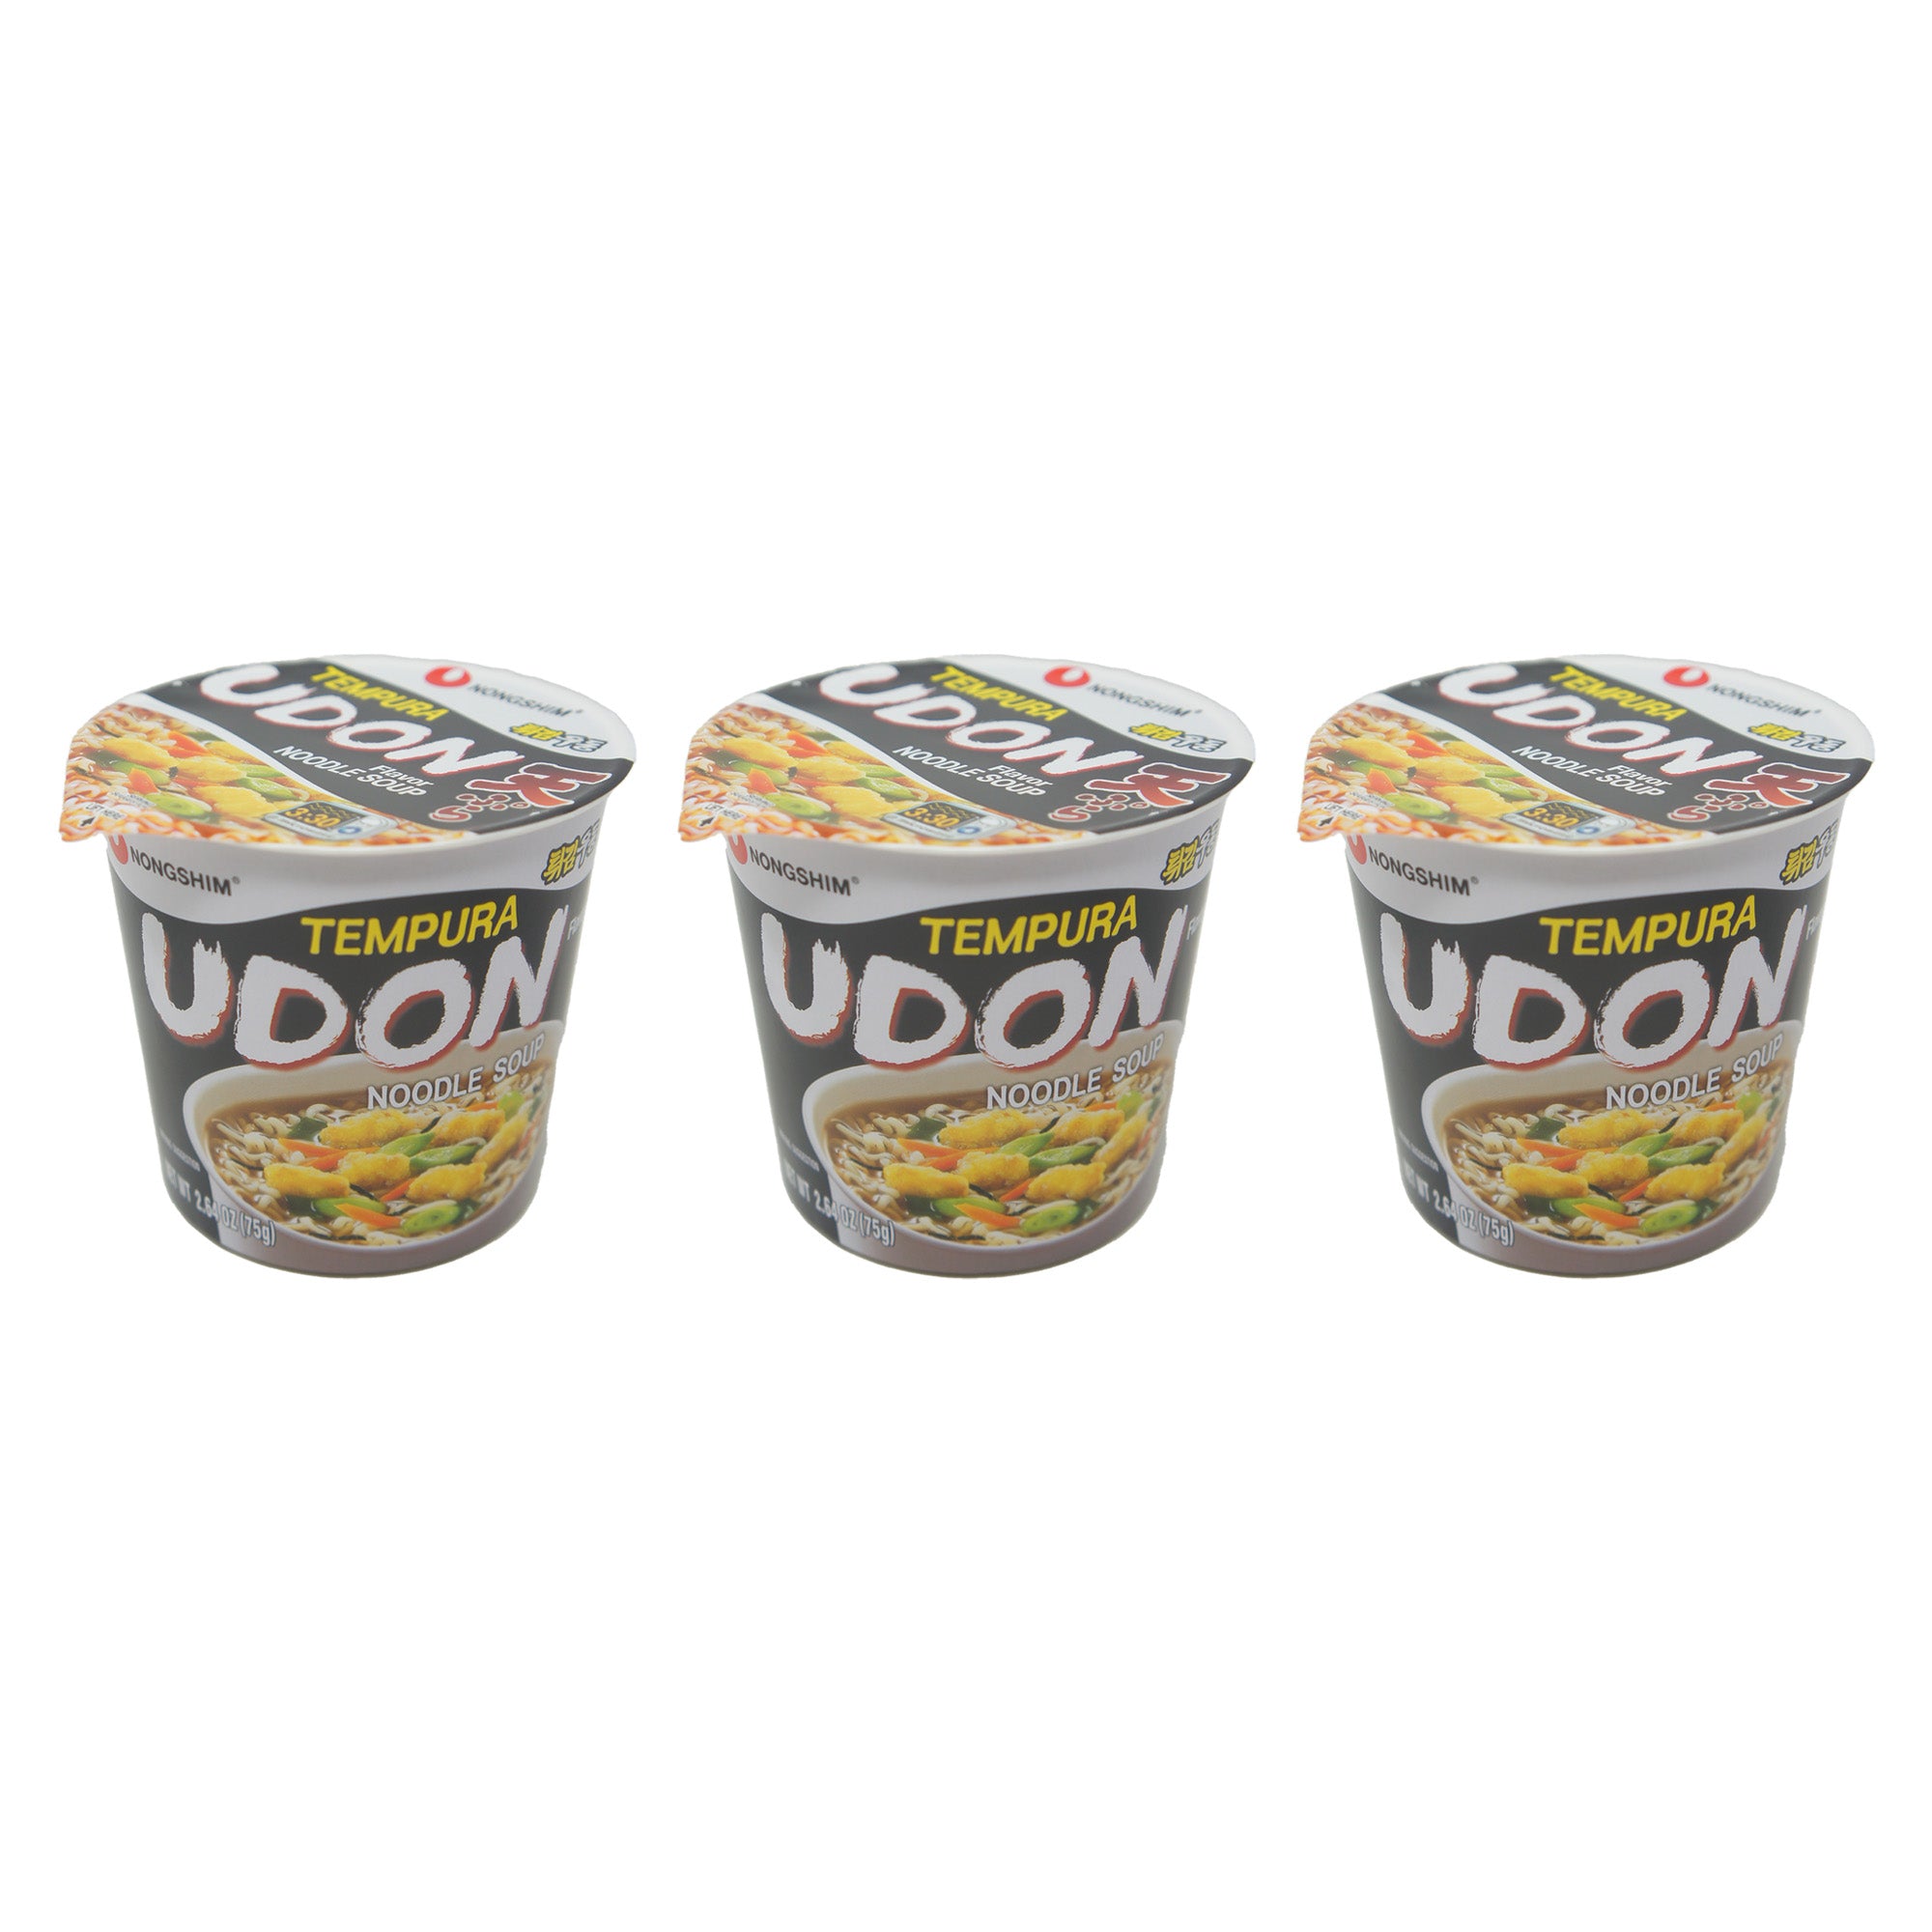 Nongshim Tempura Udon Flavor Noodle Soup, 2.64 oz Instant Cup Noodle Soup (3 Pack)